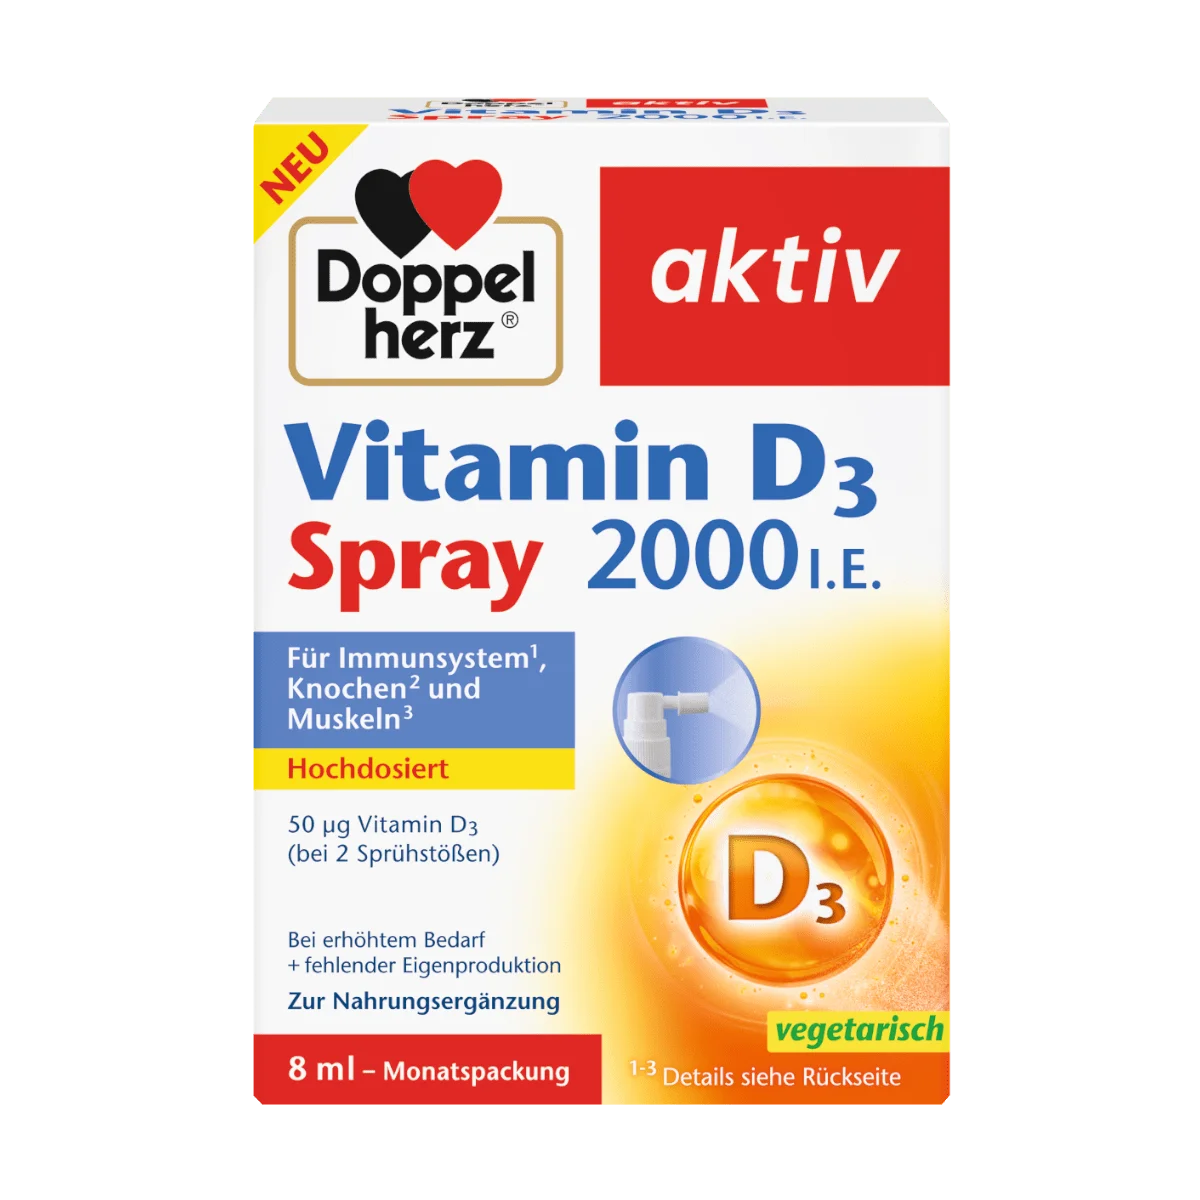 Doppelherz aktiv Vitamin D 3 Spray 2000 I. E. 8 ml